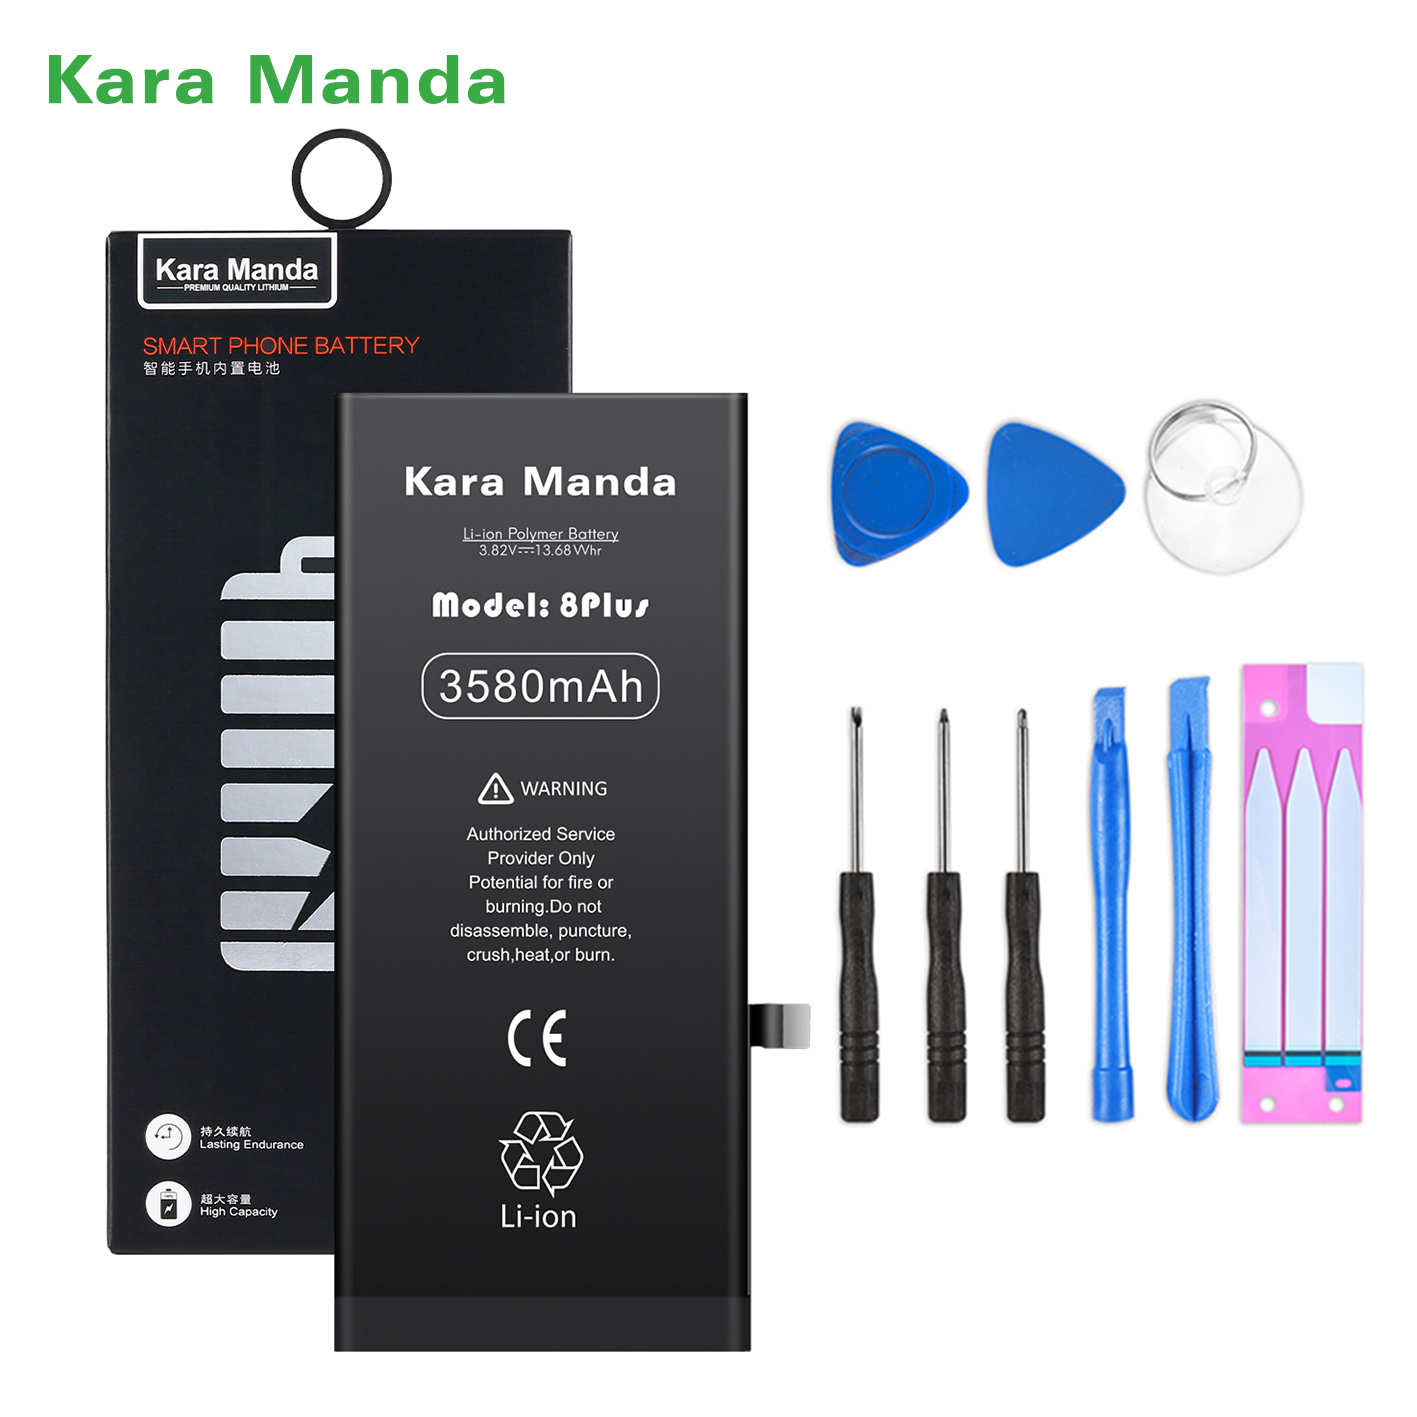 https://www.cnkaramanda.com/iphone-8plus-replacement-battery-high-capacity-3580mah-wholesale-oemkara-manda-product/